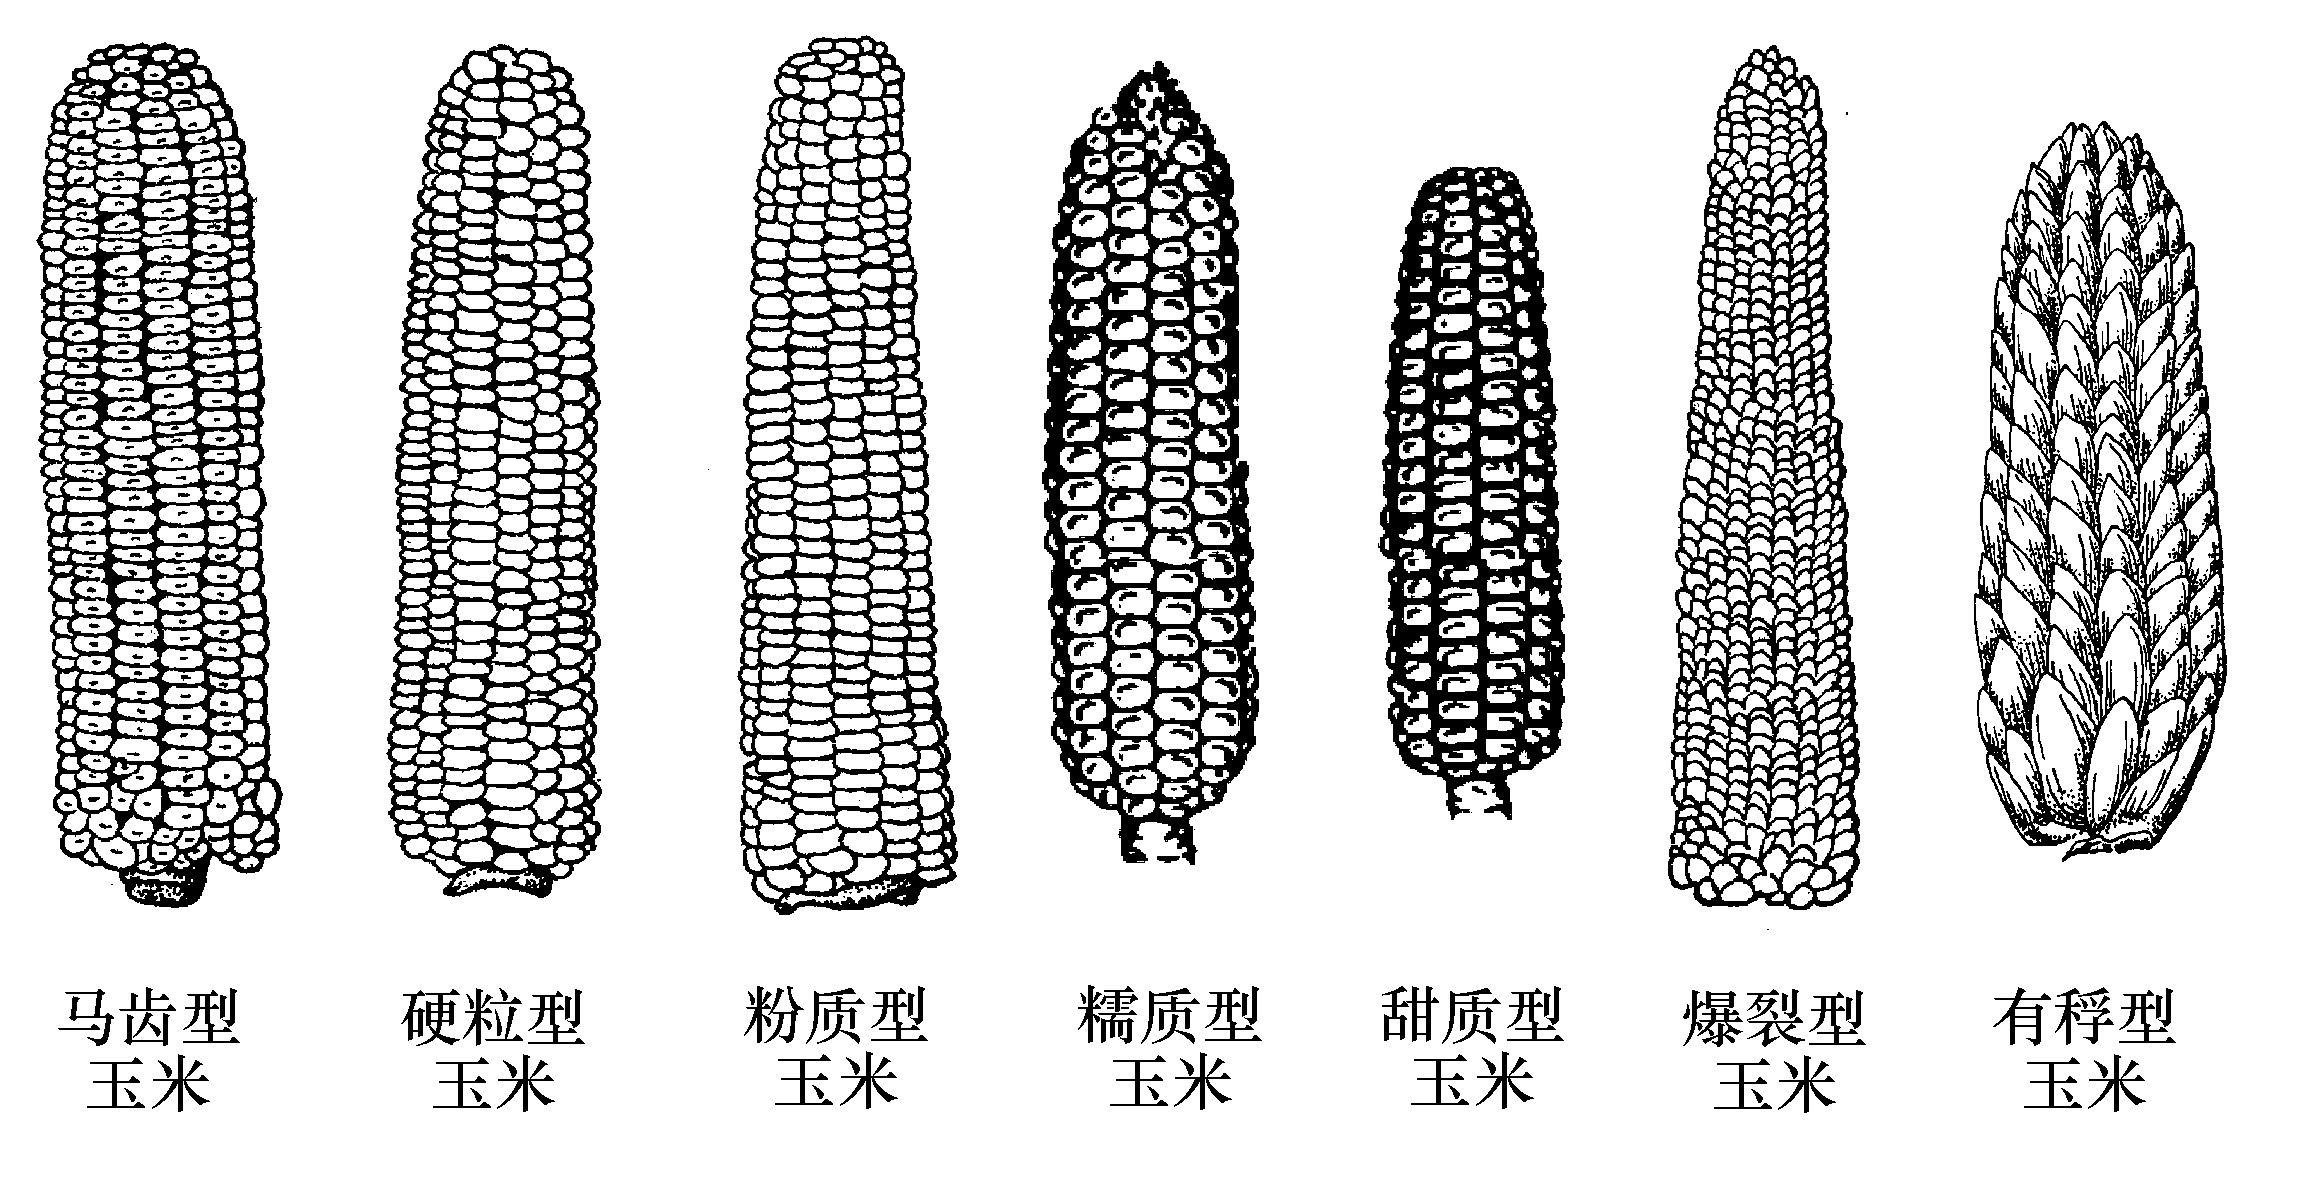 一、玉米分类